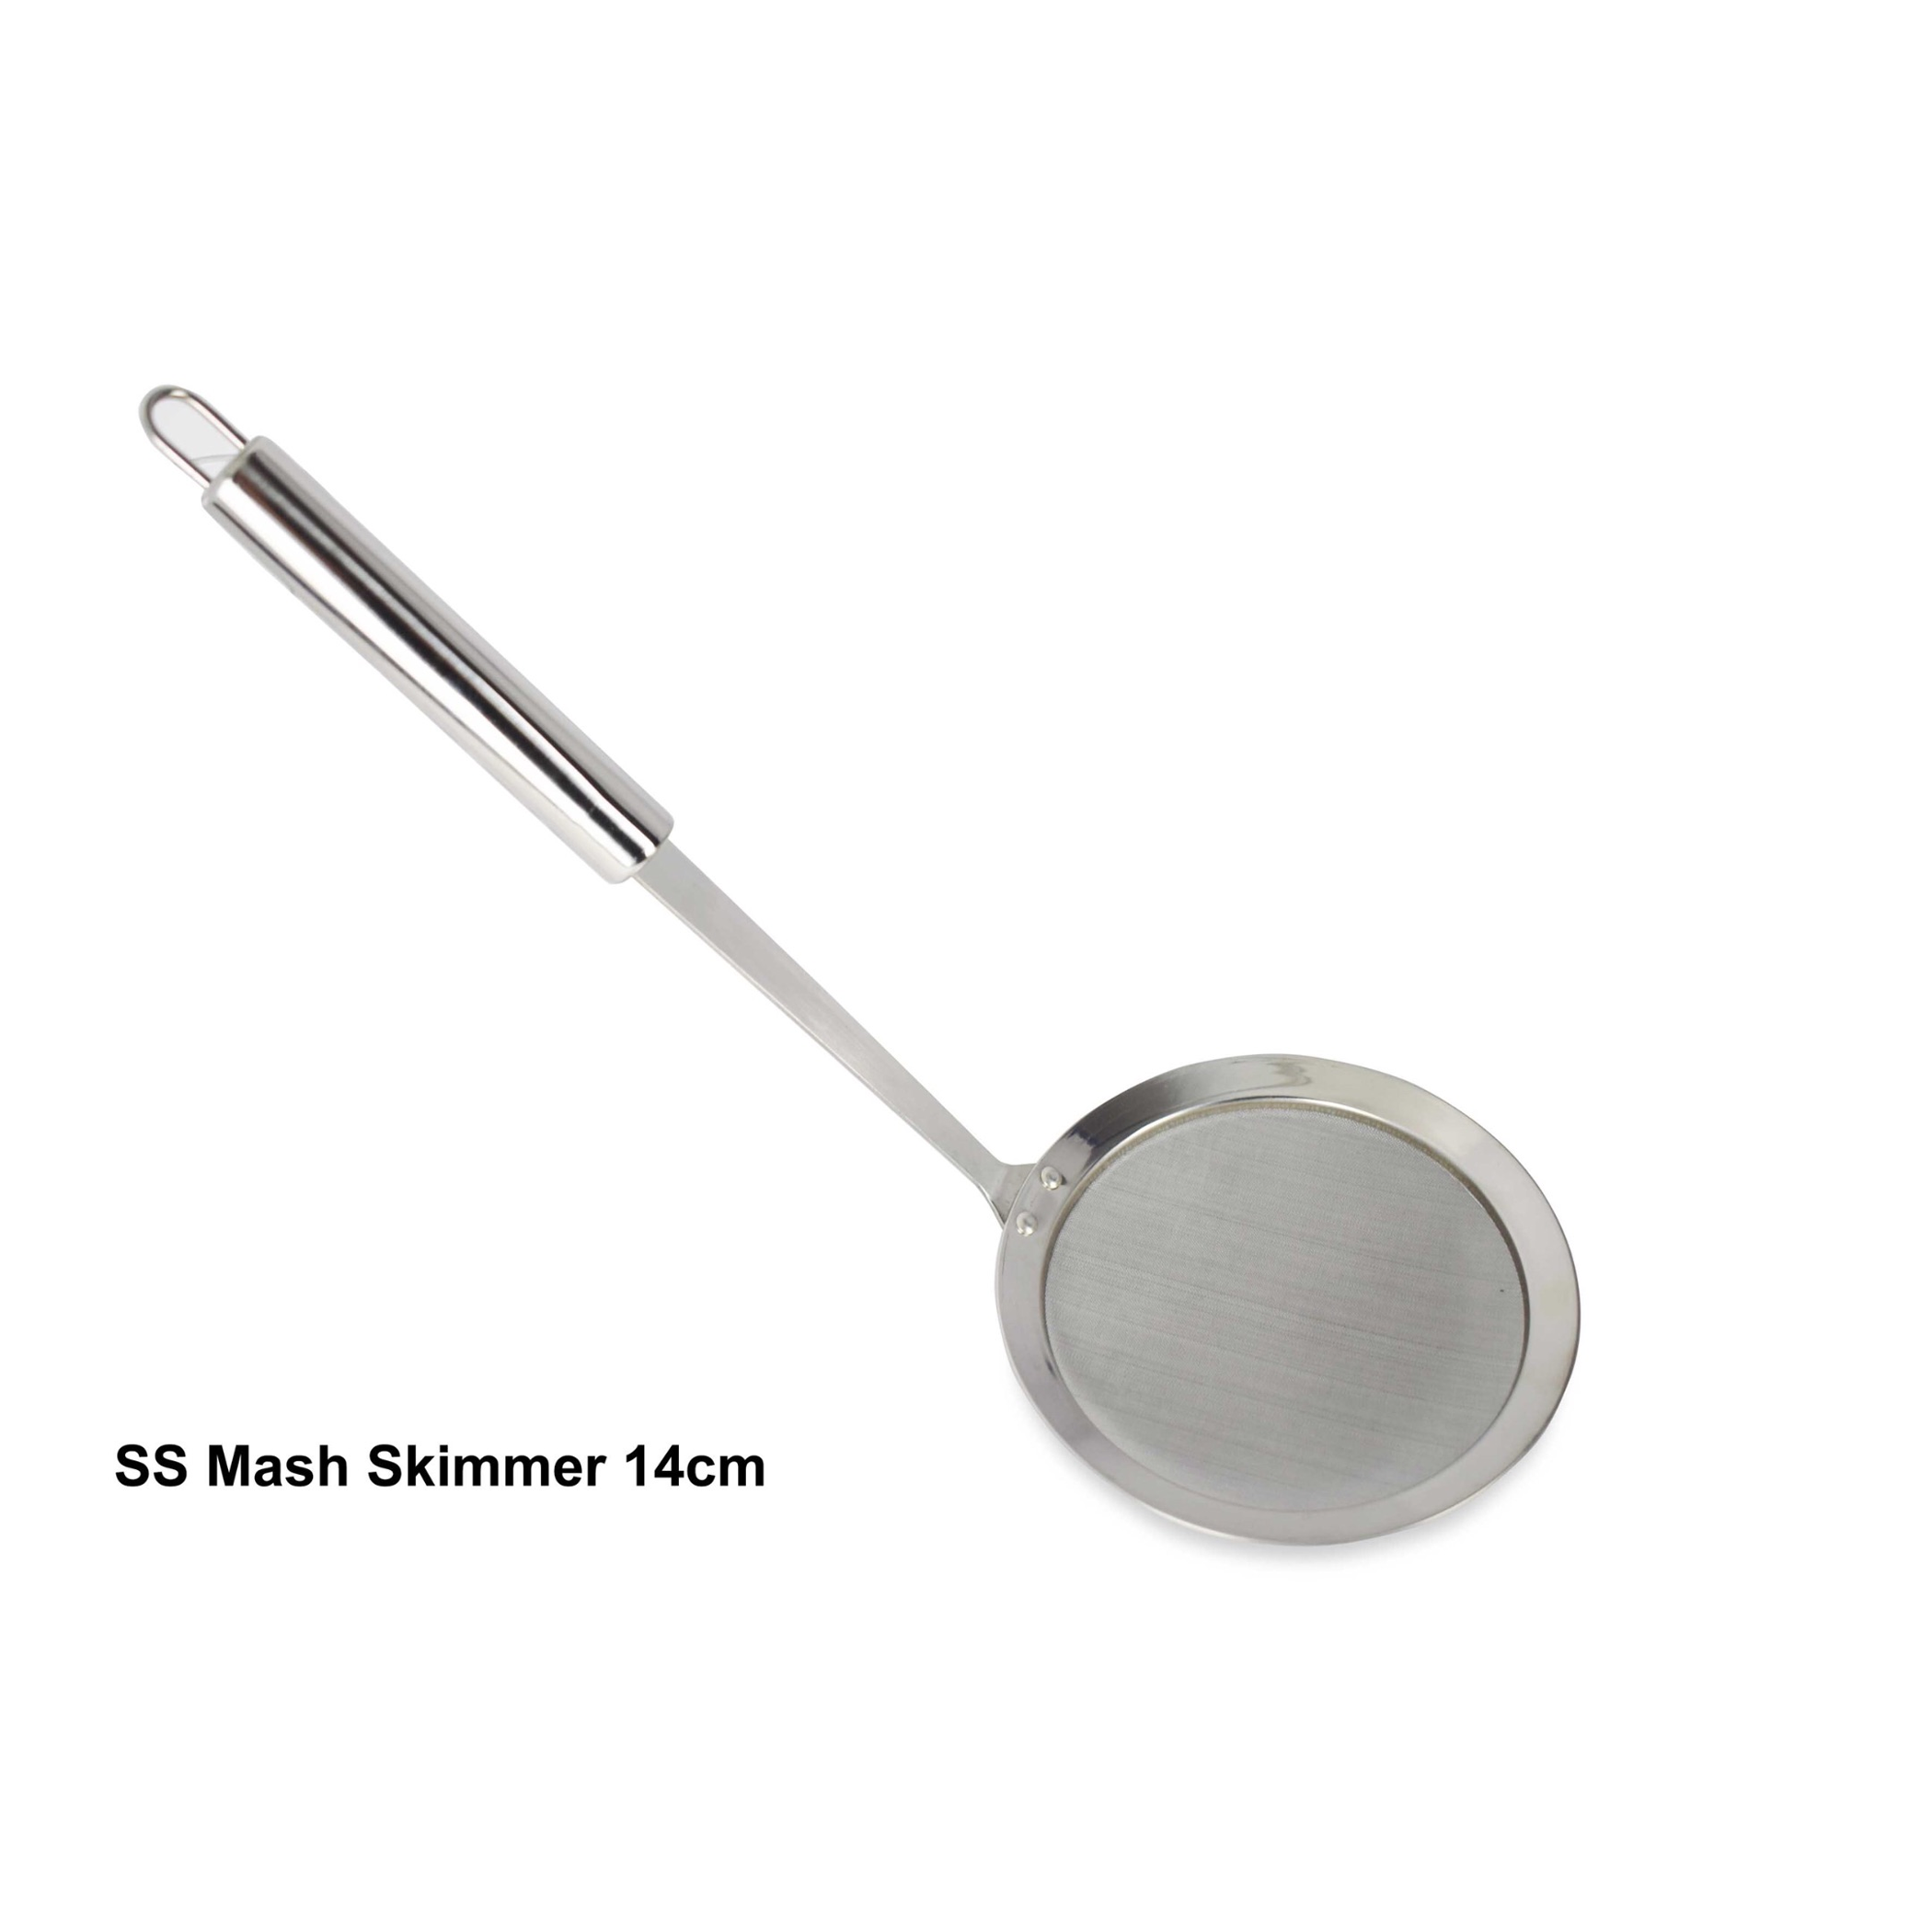 Stainless Steel Mash Skimmer - 14 cm